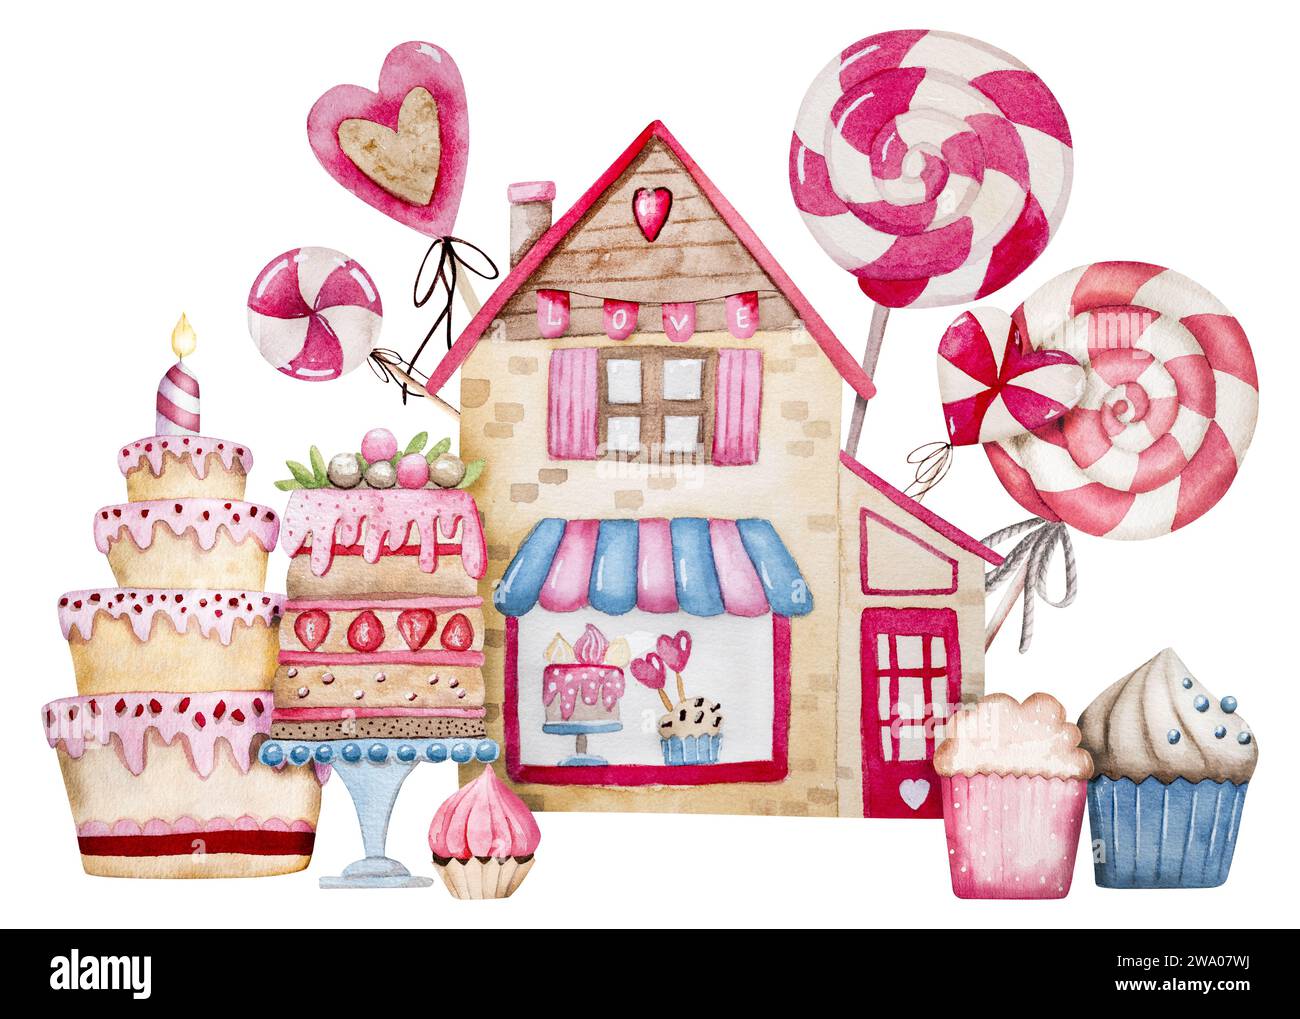 Clipart dell'illustrazione acquerello disegnato a mano a tema per il 14 febbraio, con Un negozio di caramelle con torte, torte e caramelle per San Valentino Foto Stock